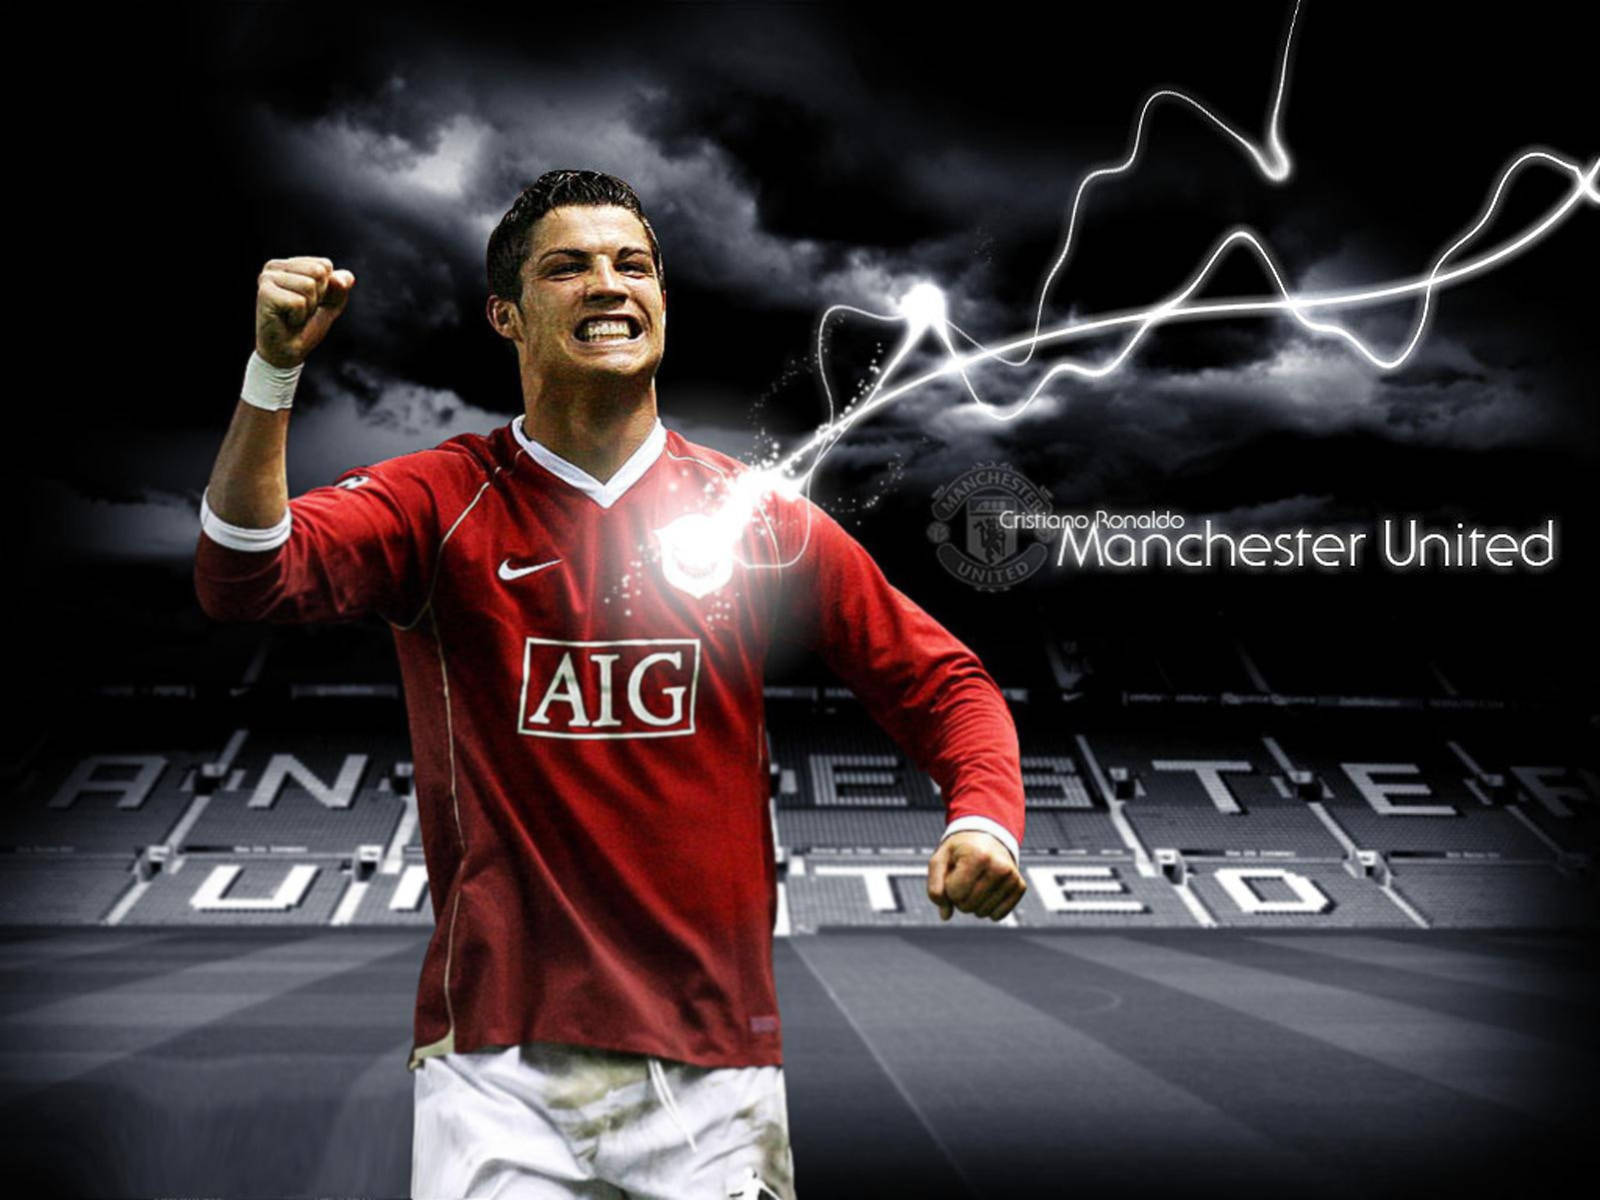 Cristiano Ronaldo Manchester United Poster Wallpaper